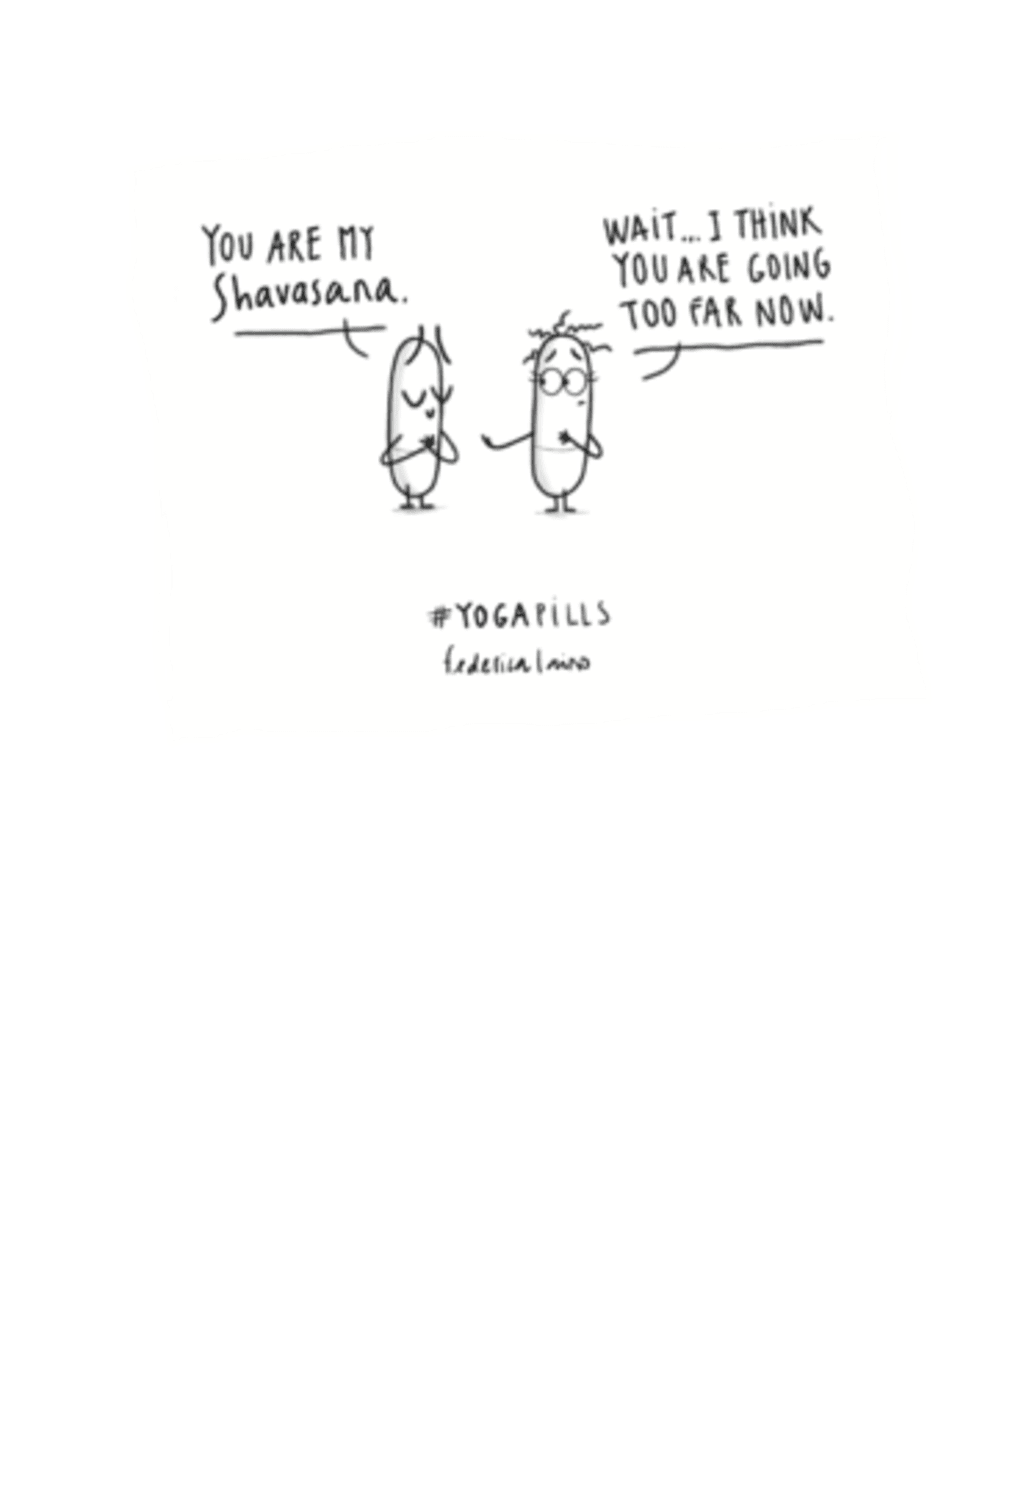 #Yogapills - Shavasana